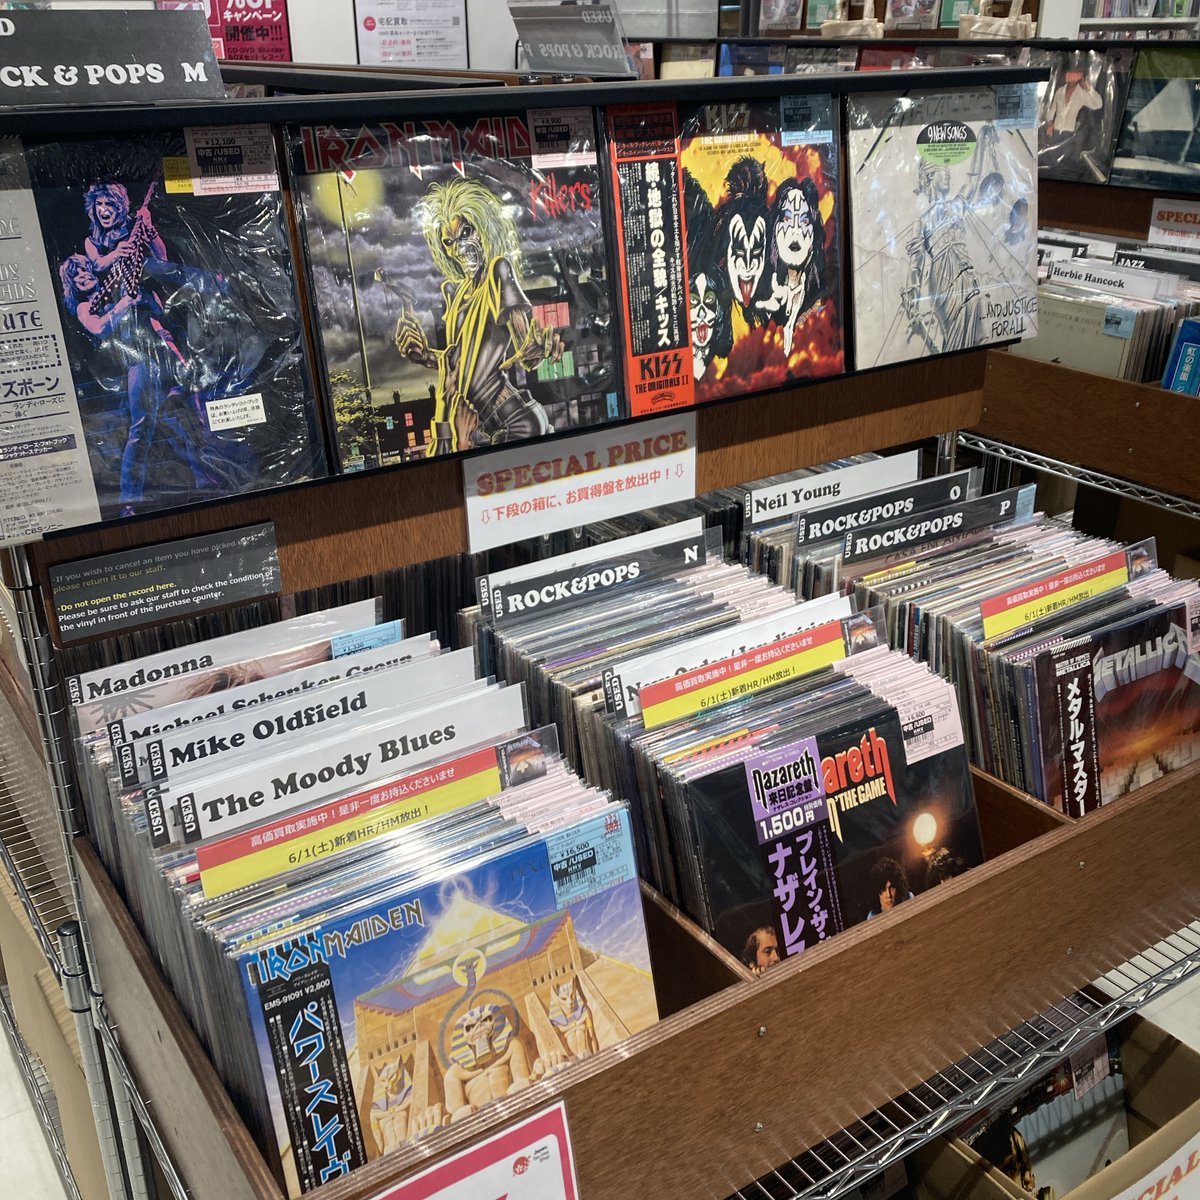 本日の中古廃盤特集は2本立て！

「和モノ新着放出」
「HARD ROCK/HEAVY METAL 新着放出」

どちらも良いもの揃ってます！
ご来店お待ちしております！！

#Osaka #vinylshop #vinylrecords #recordstore #アナログ #レコード #Shinsaibashi 
#vinyl #vinyladdict #vinylcommunity #vinylcollector